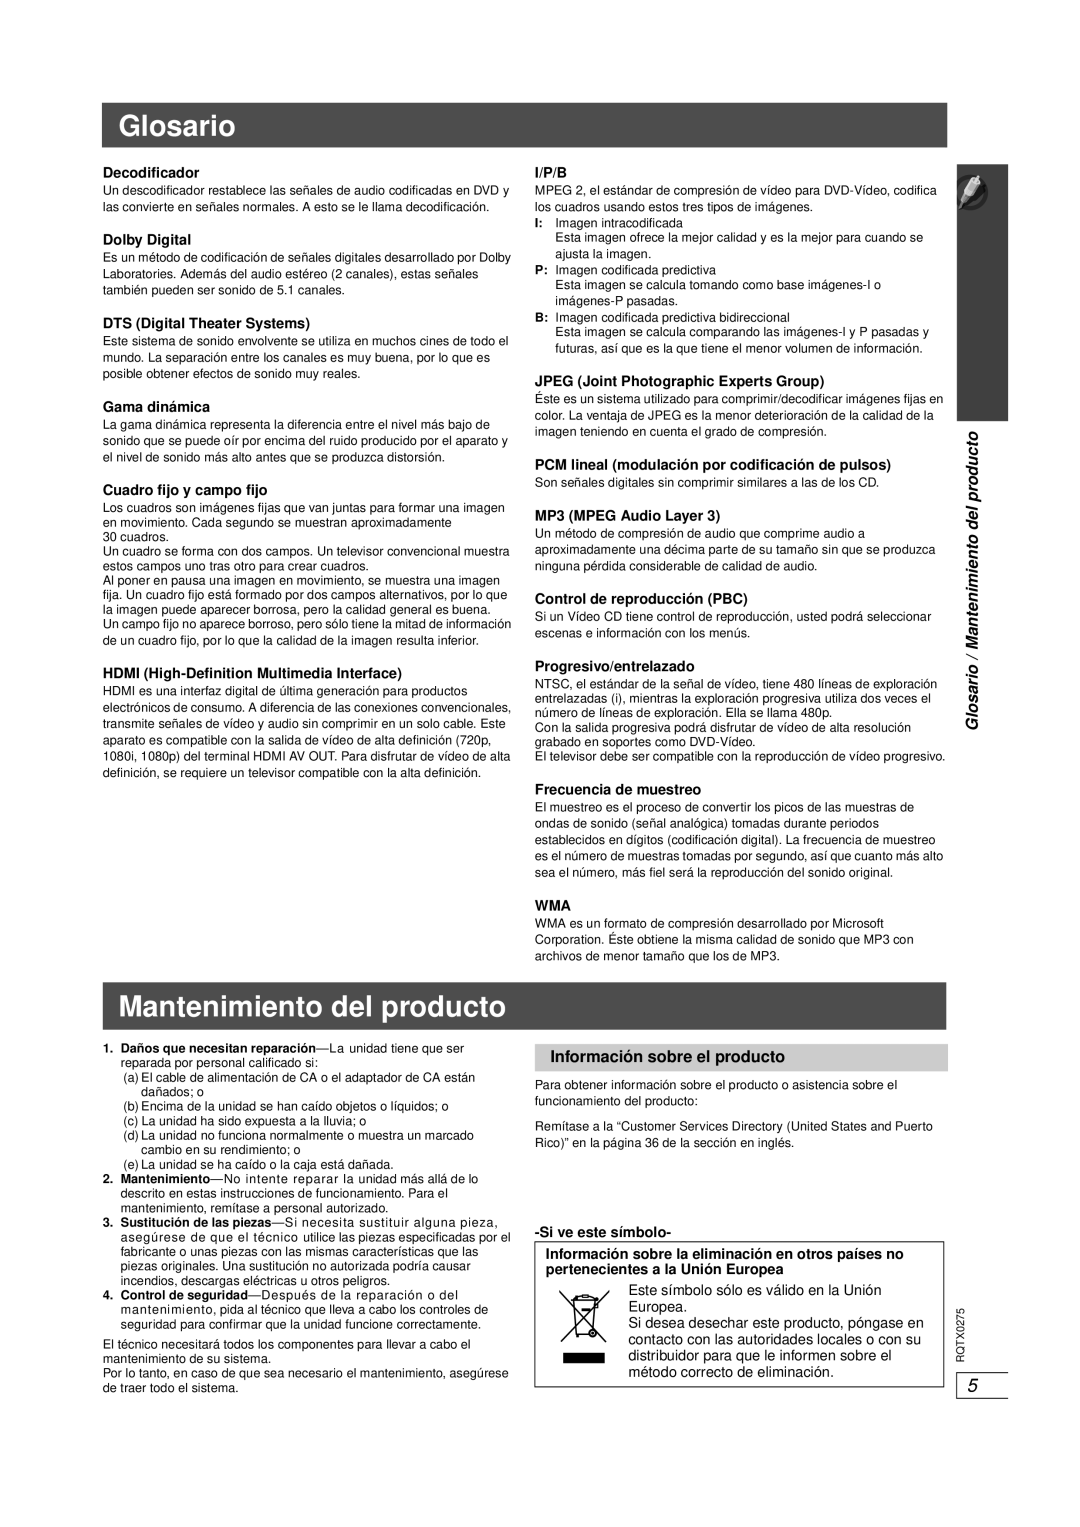 Panasonic SC-PT665 manual Glosario, Mantenimiento del producto, Información sobre el producto 